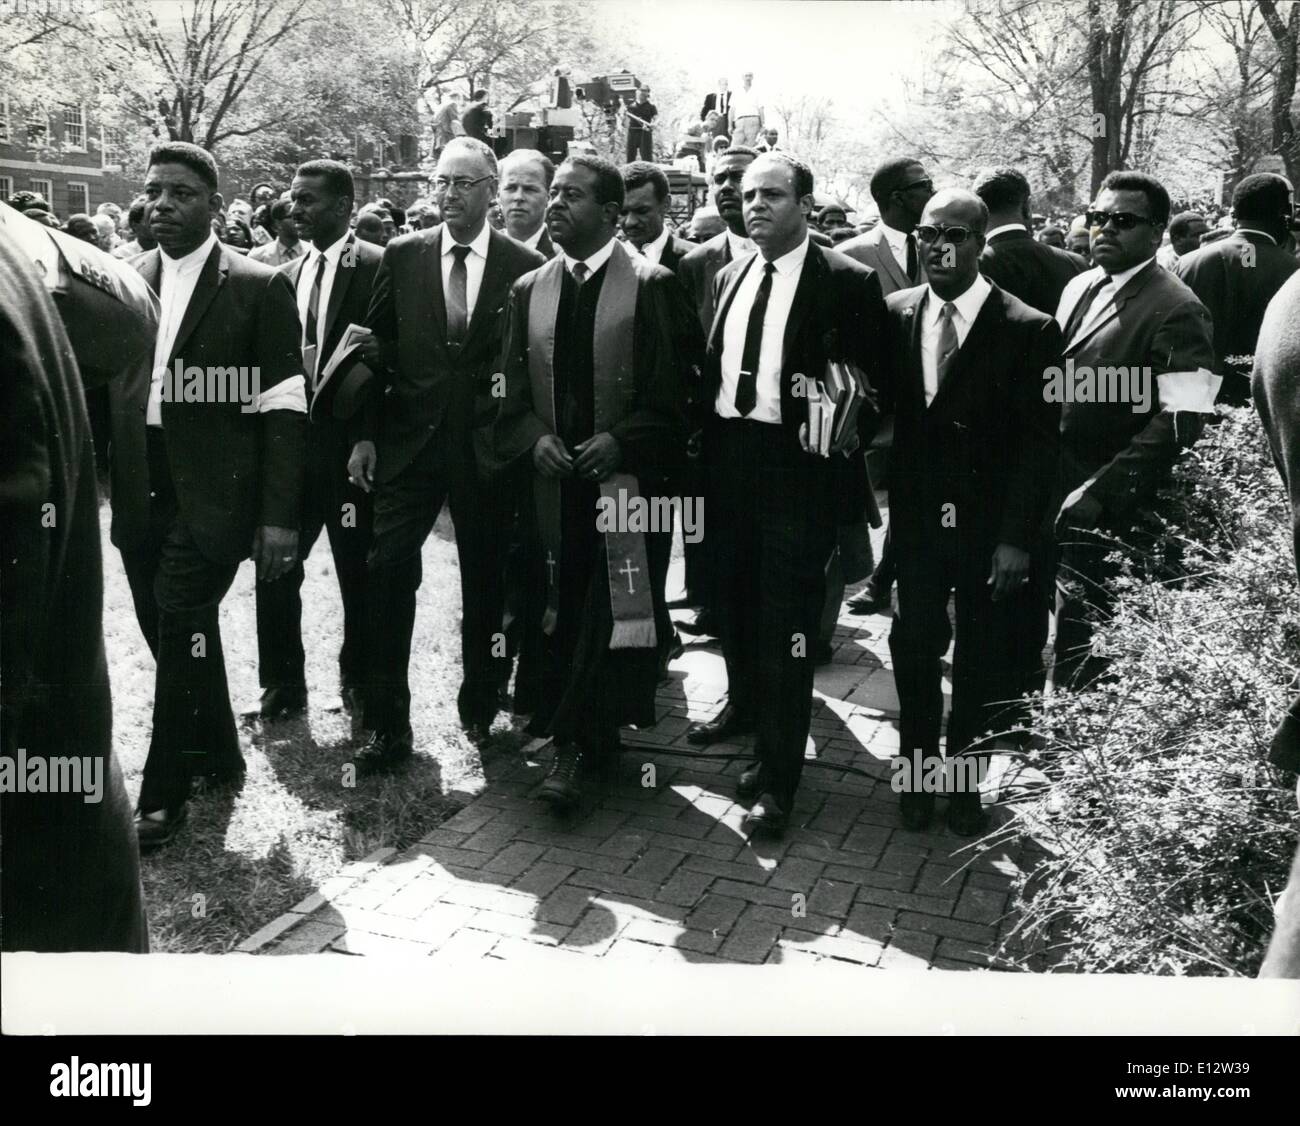 25 février 2012 - Les funérailles du Dr Martin Luther King. : successeur de Dr Martin Luther King. Le docteur Abernathy, arrive pour les funérailles Banque D'Images